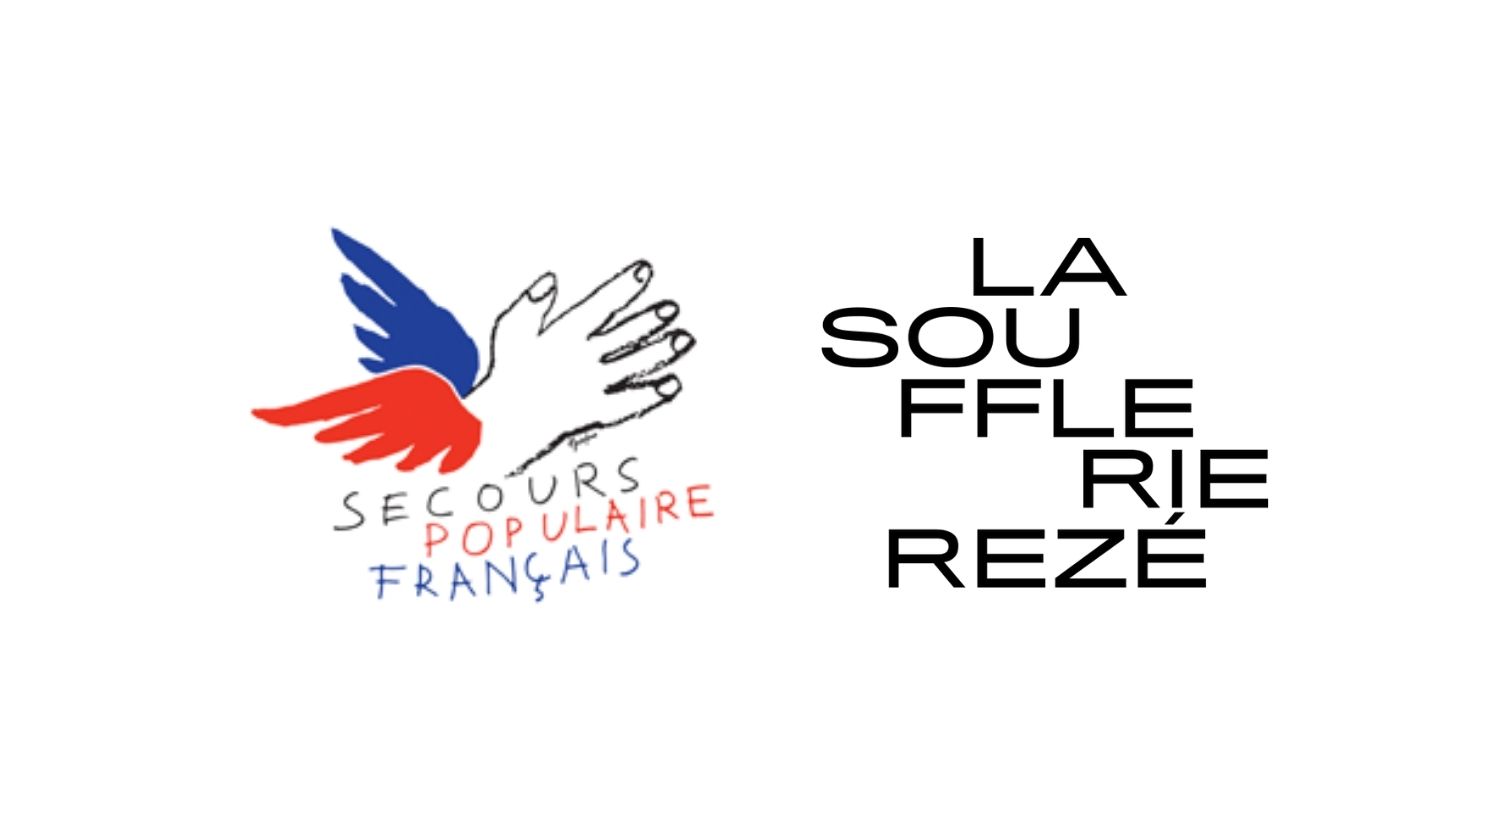 Logos du Secours Populaire et de la Soufflerie